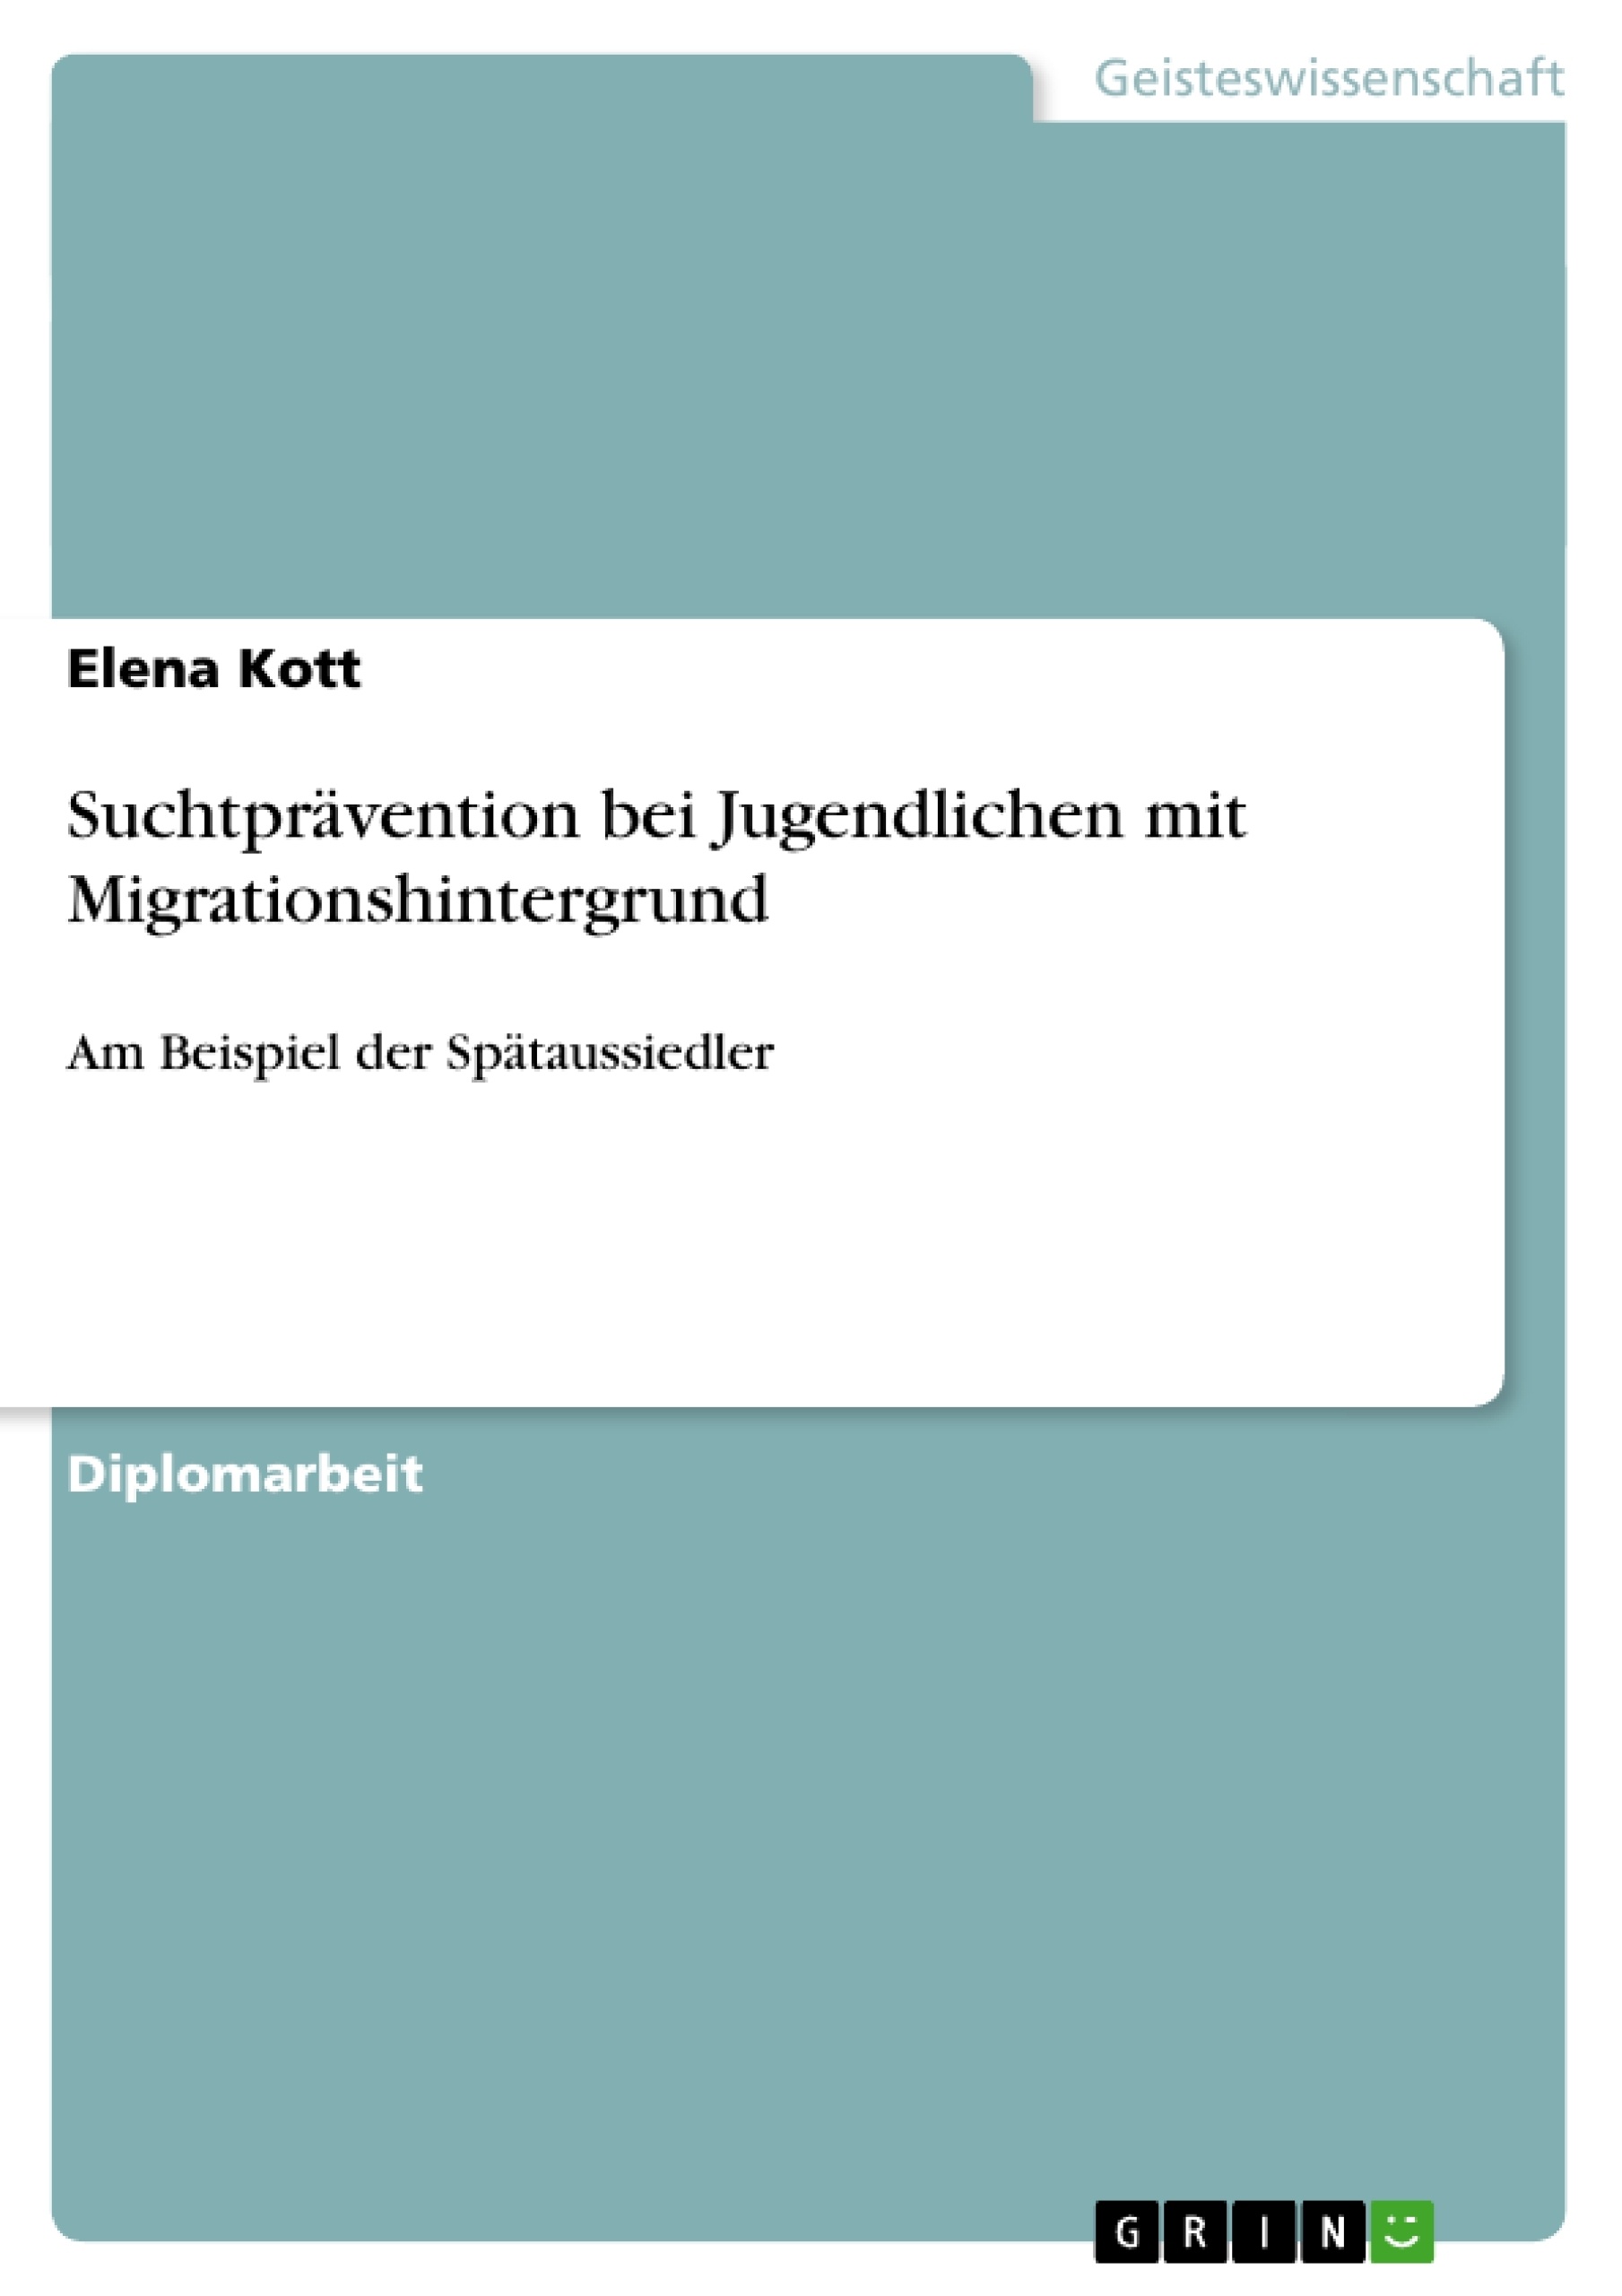 Título: Suchtprävention bei Jugendlichen mit Migrationshintergrund